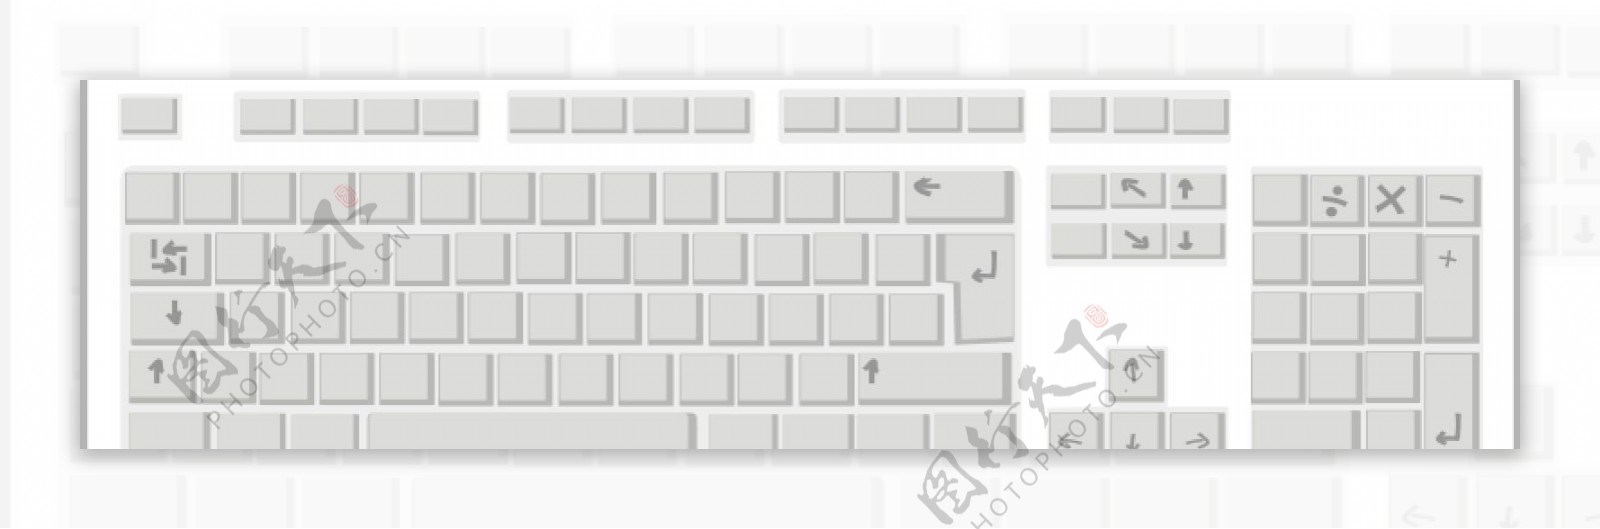 空白键盘矢量图